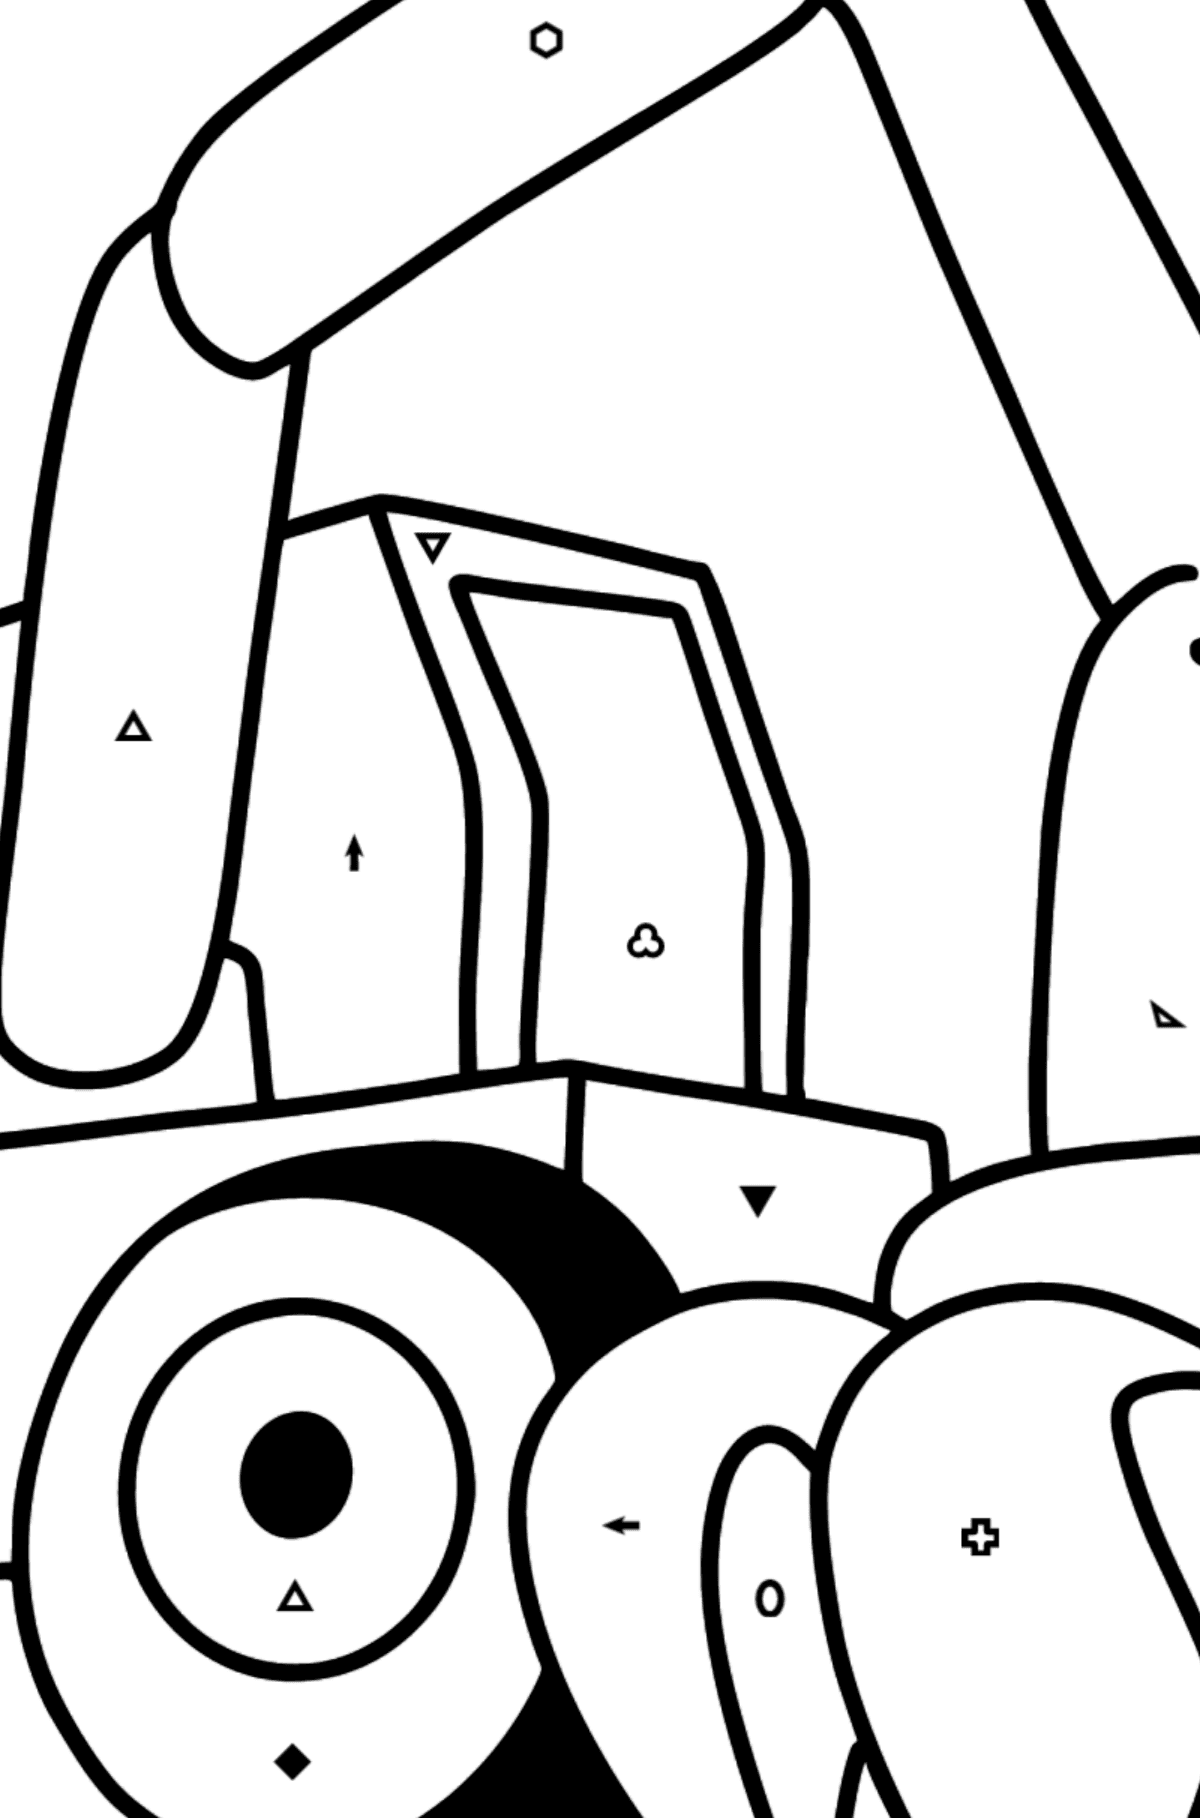 Coloriage - Tracteur de construction - Coloriage par Symboles pour les Enfants